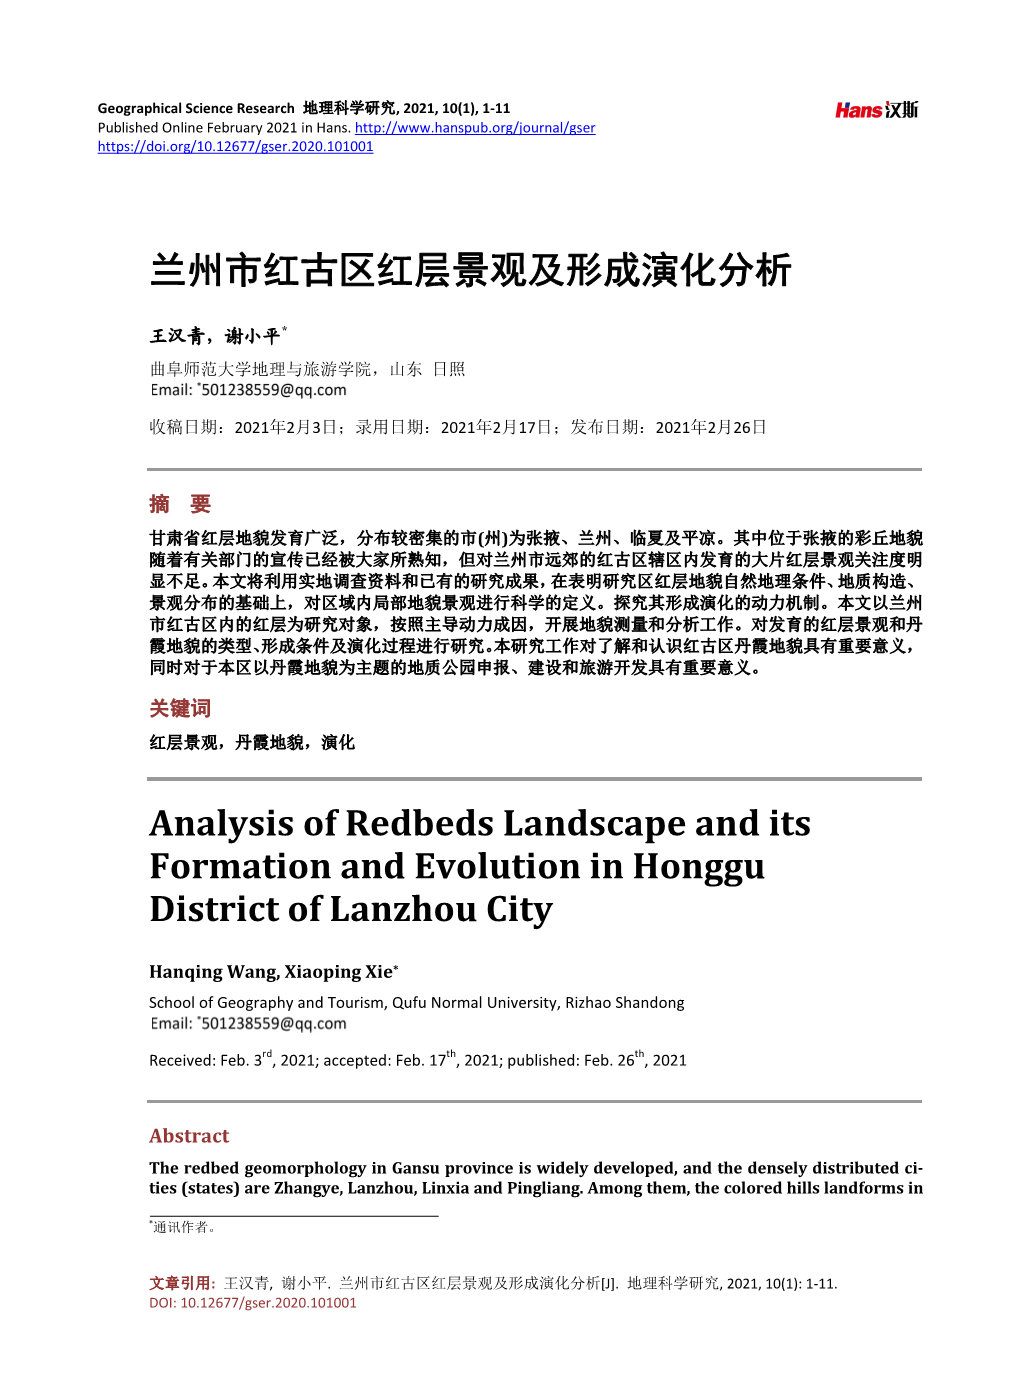 兰州市红古区红层景观及形成演化分析analysis of Redbeds